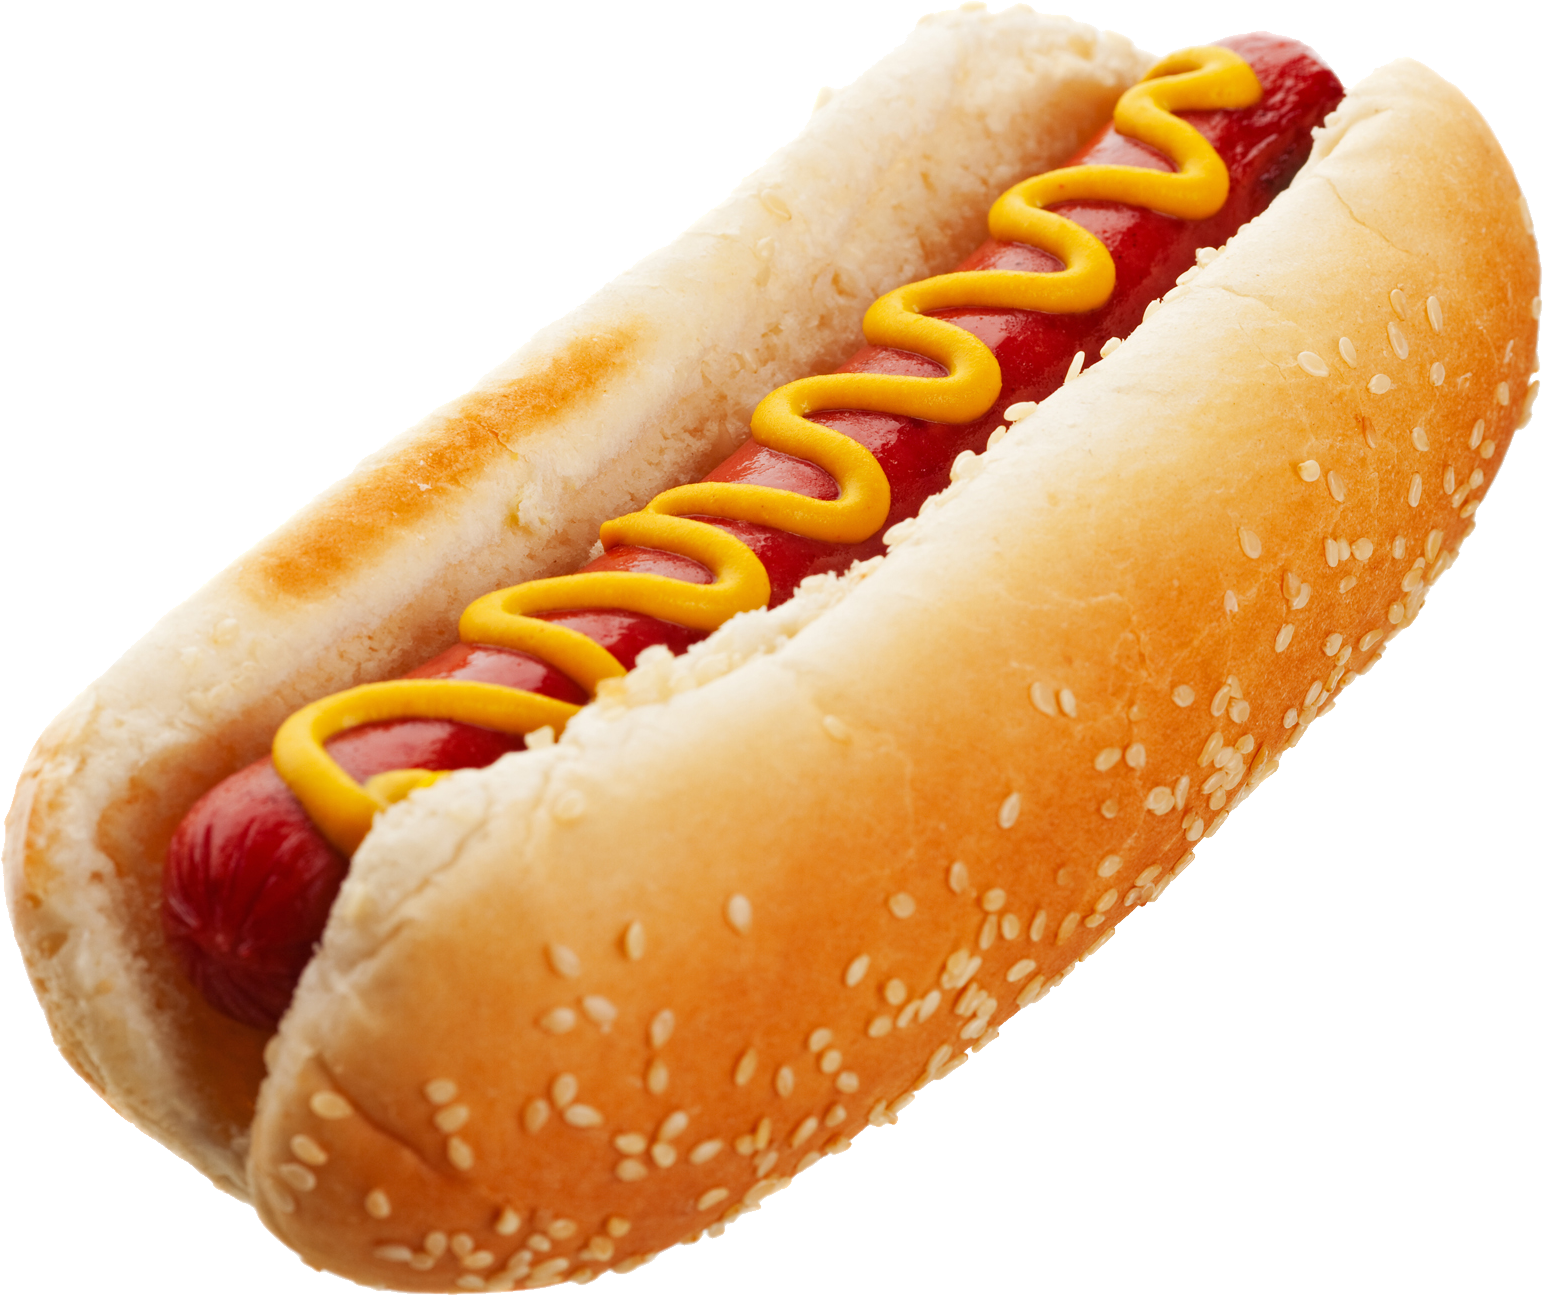 PNG Hot Dog - 68161